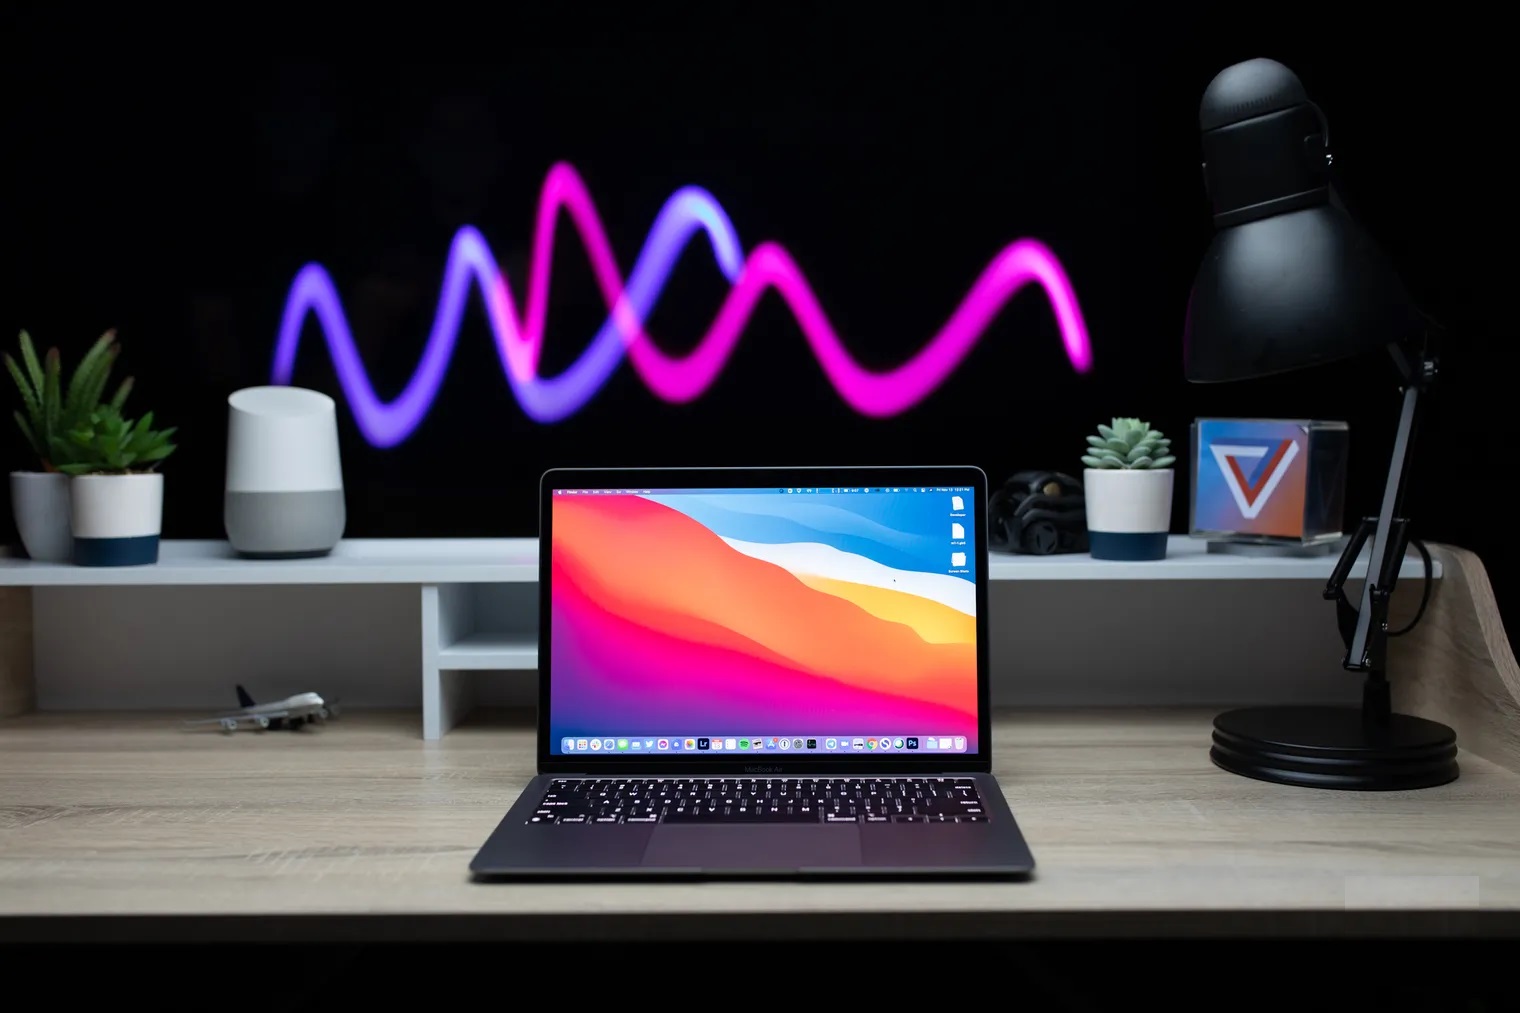 Φήμες ότι το Apple MacBook Air με την 13 ιντσών οθόνη Mini LED έρχεται το 2022